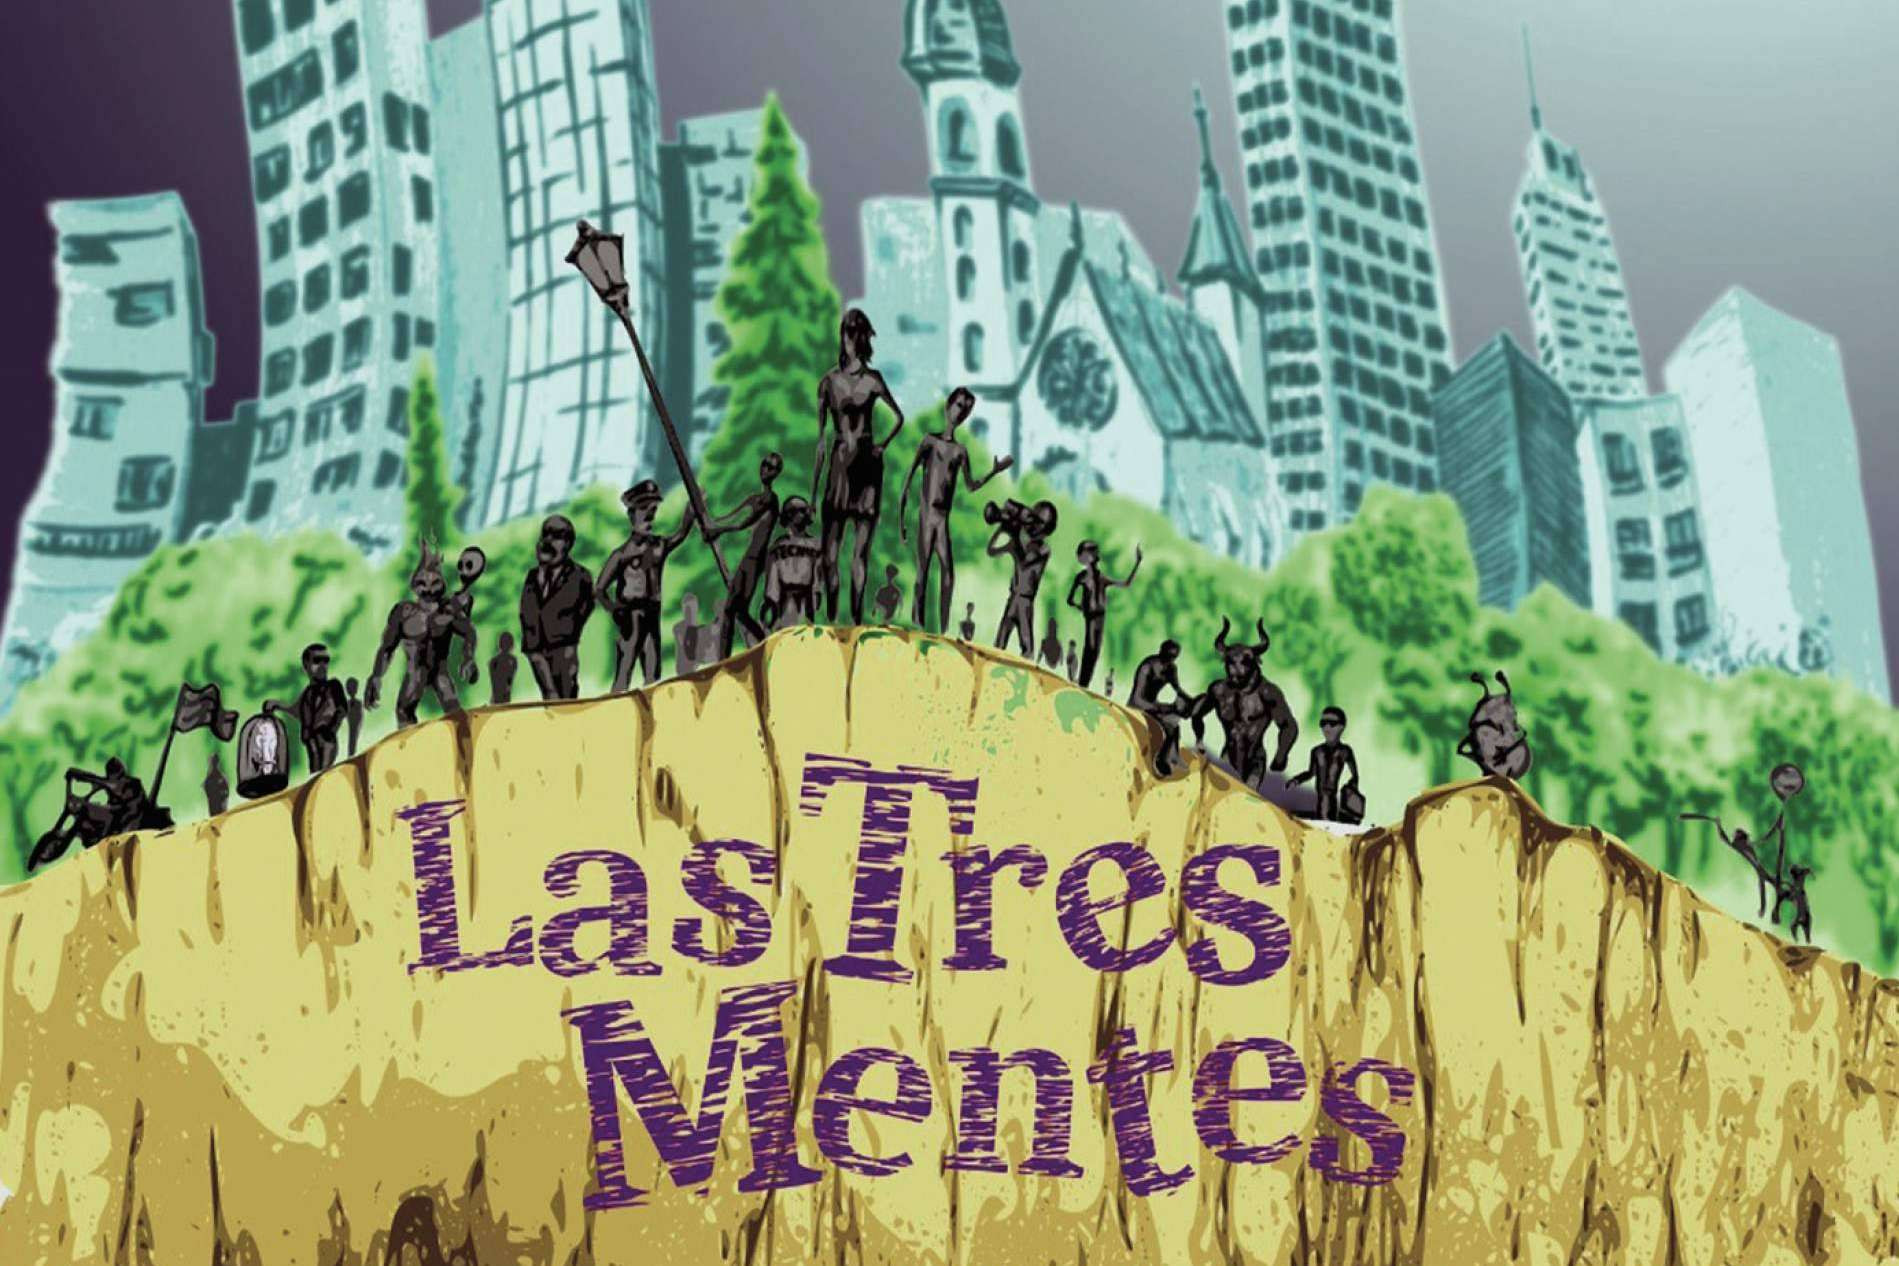  'Las Tres Mentes' de Marcos Rica Sánchez; una genial oda al disparate en medio del caos 